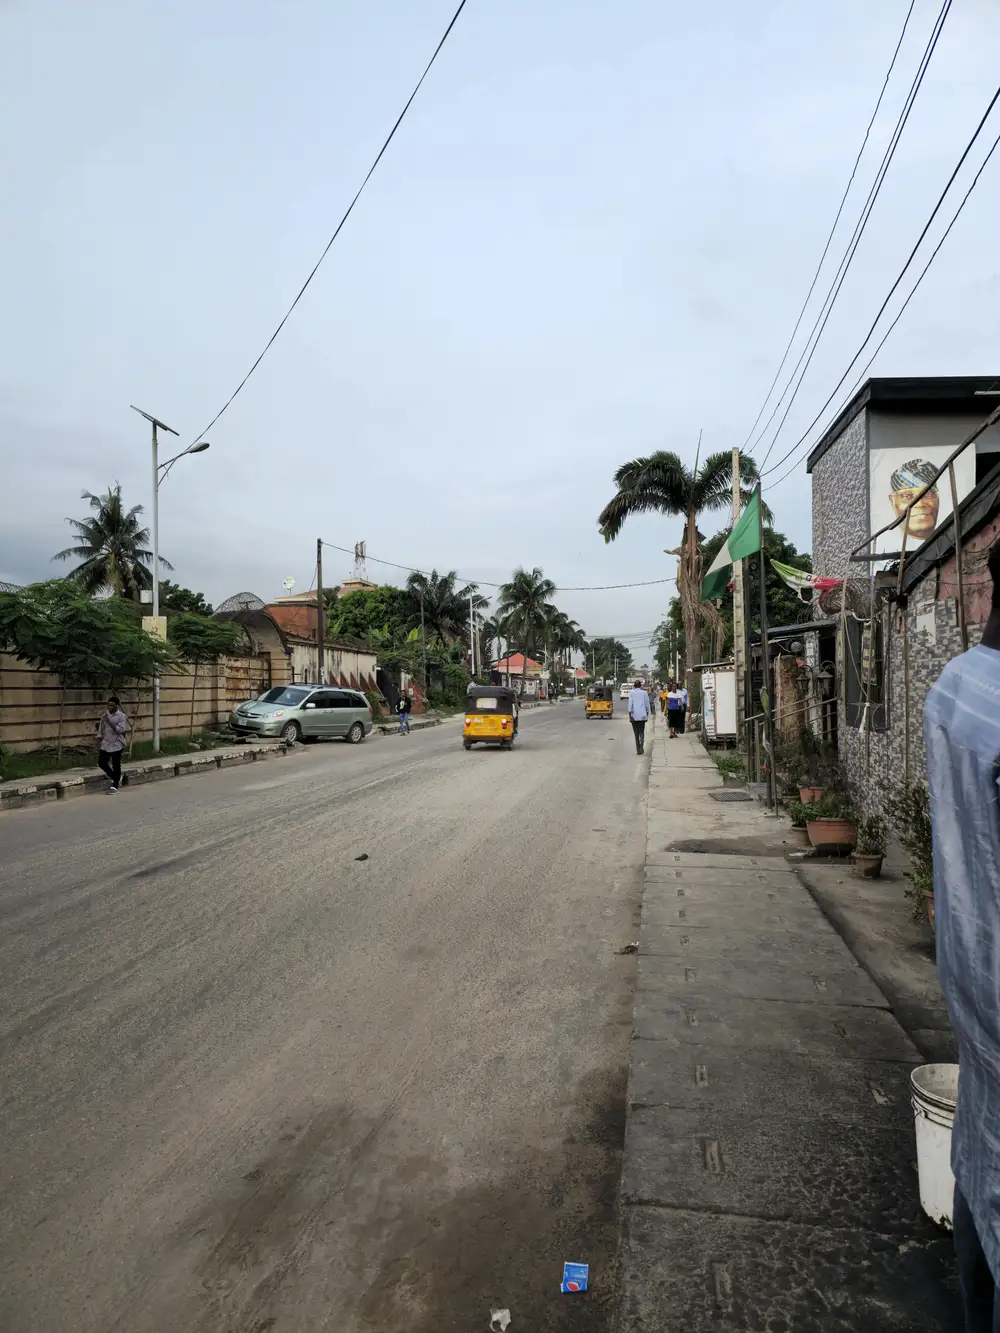 A Nigerian street